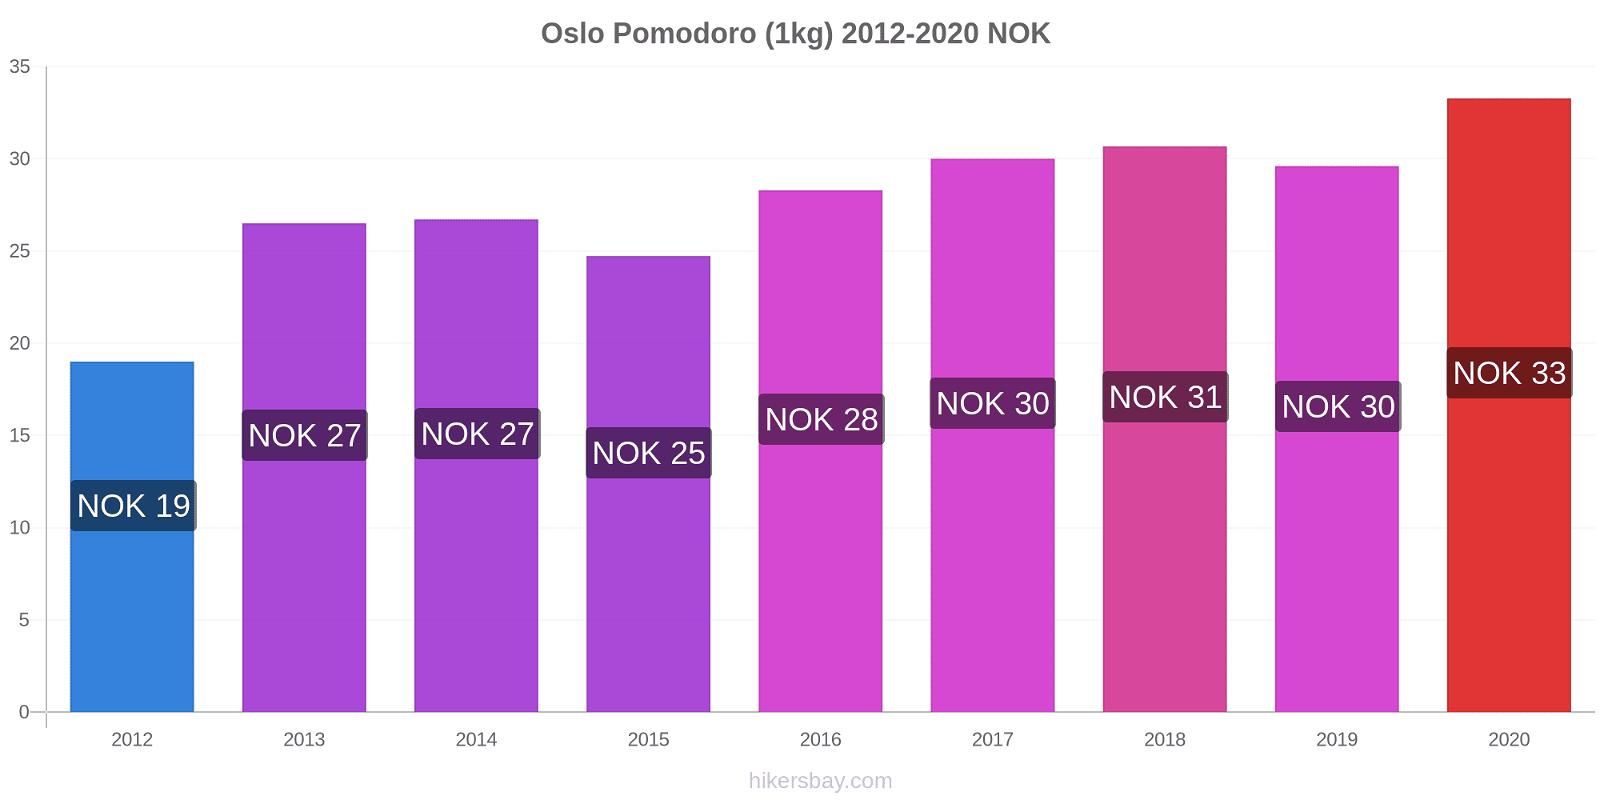 Oslo variazioni di prezzo Pomodoro (1kg) hikersbay.com